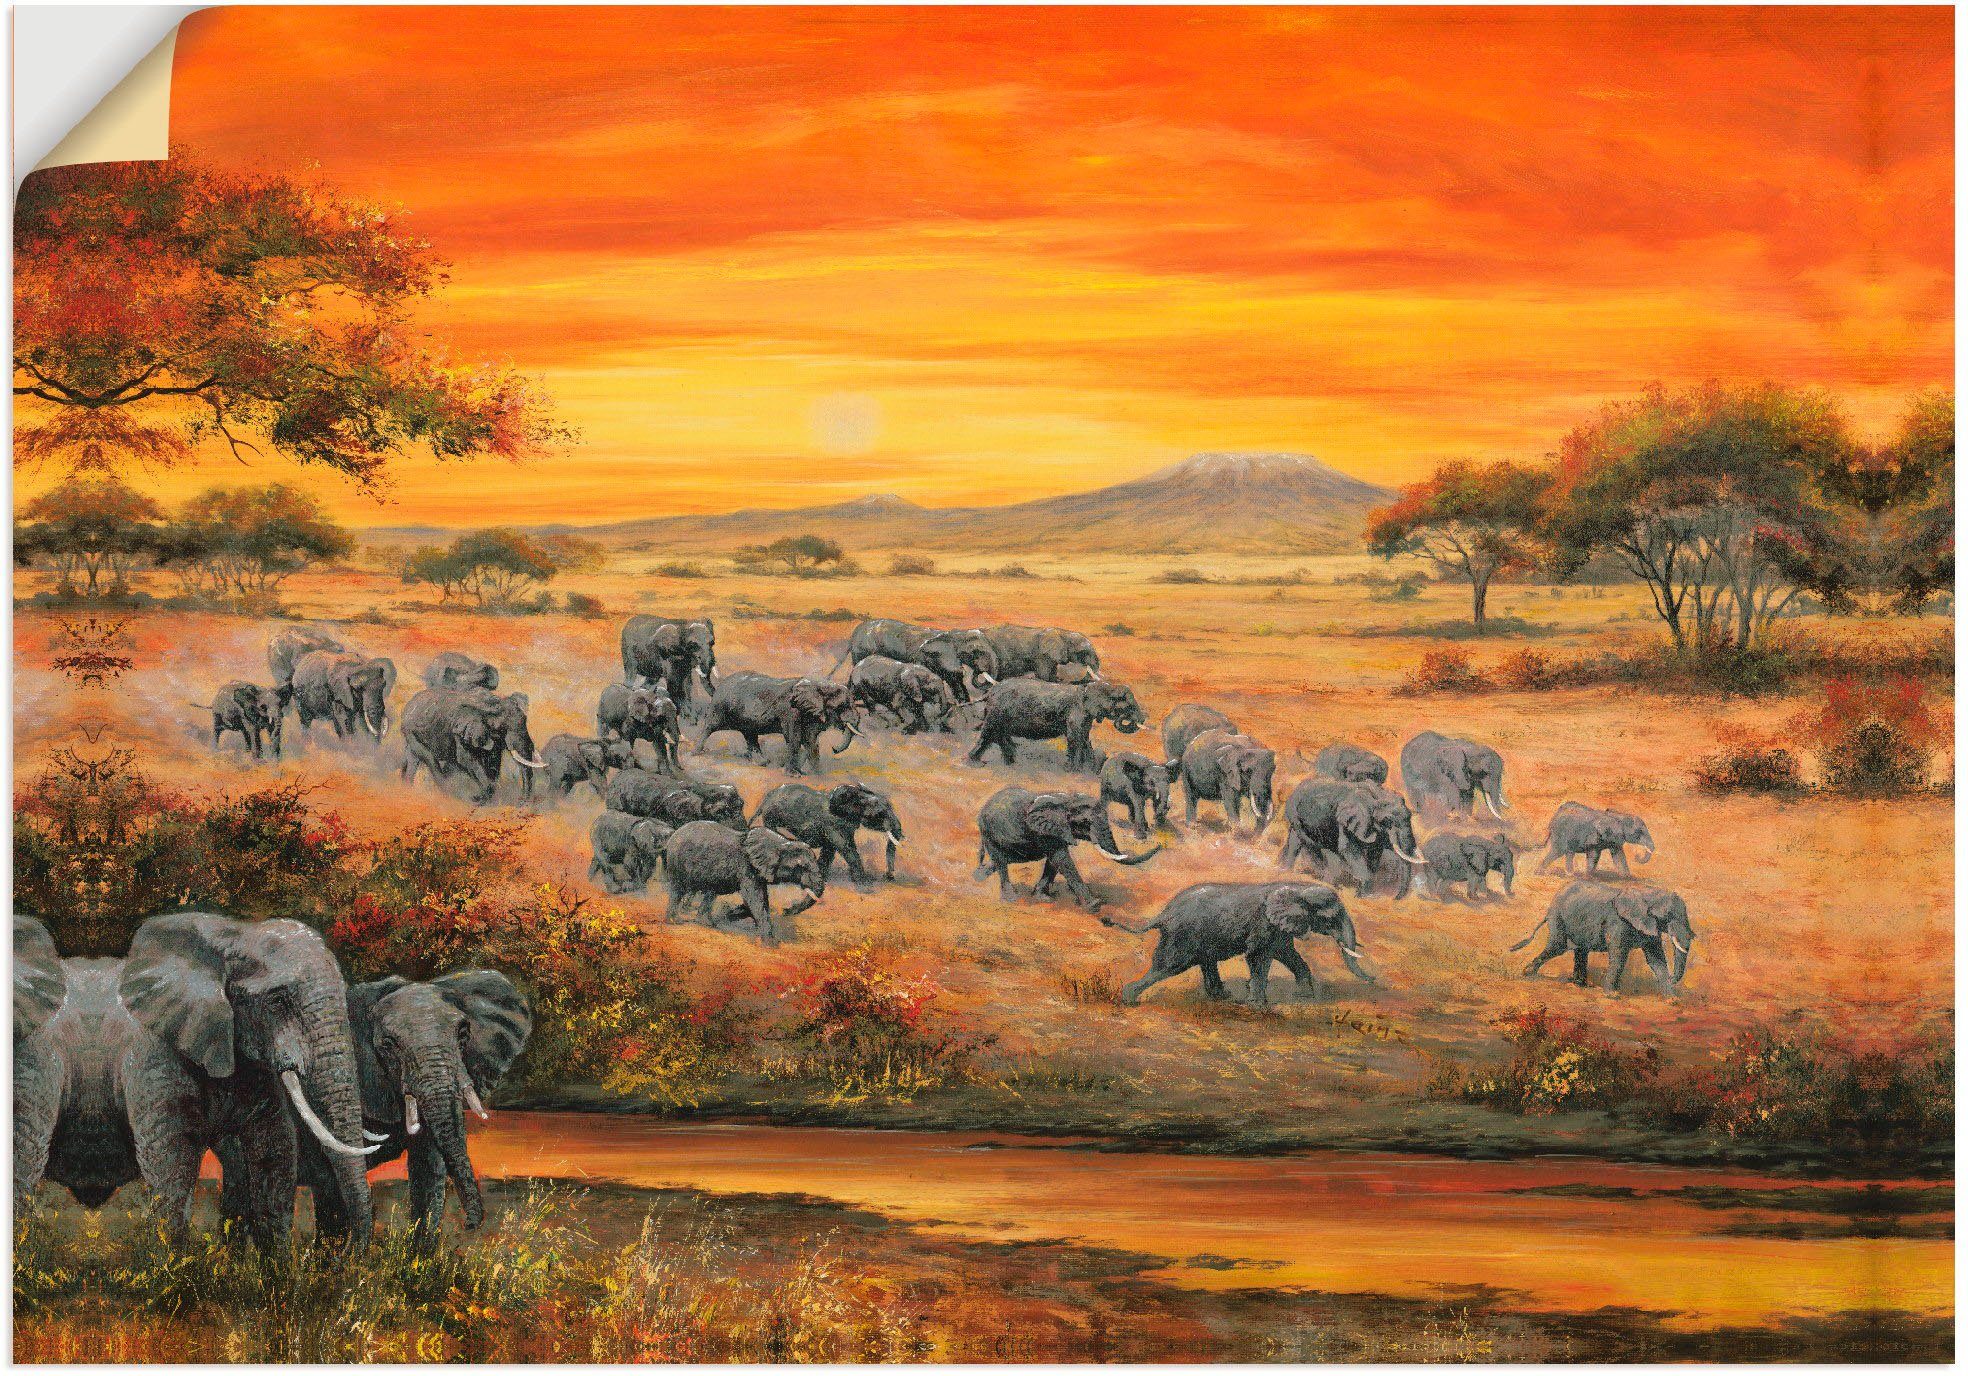 Artland Artprint Wilde leven - olifanten in vele afmetingen & productsoorten - artprint van aluminium / artprint voor buiten, artprint op linnen, poster, muursticker / wandfolie oo